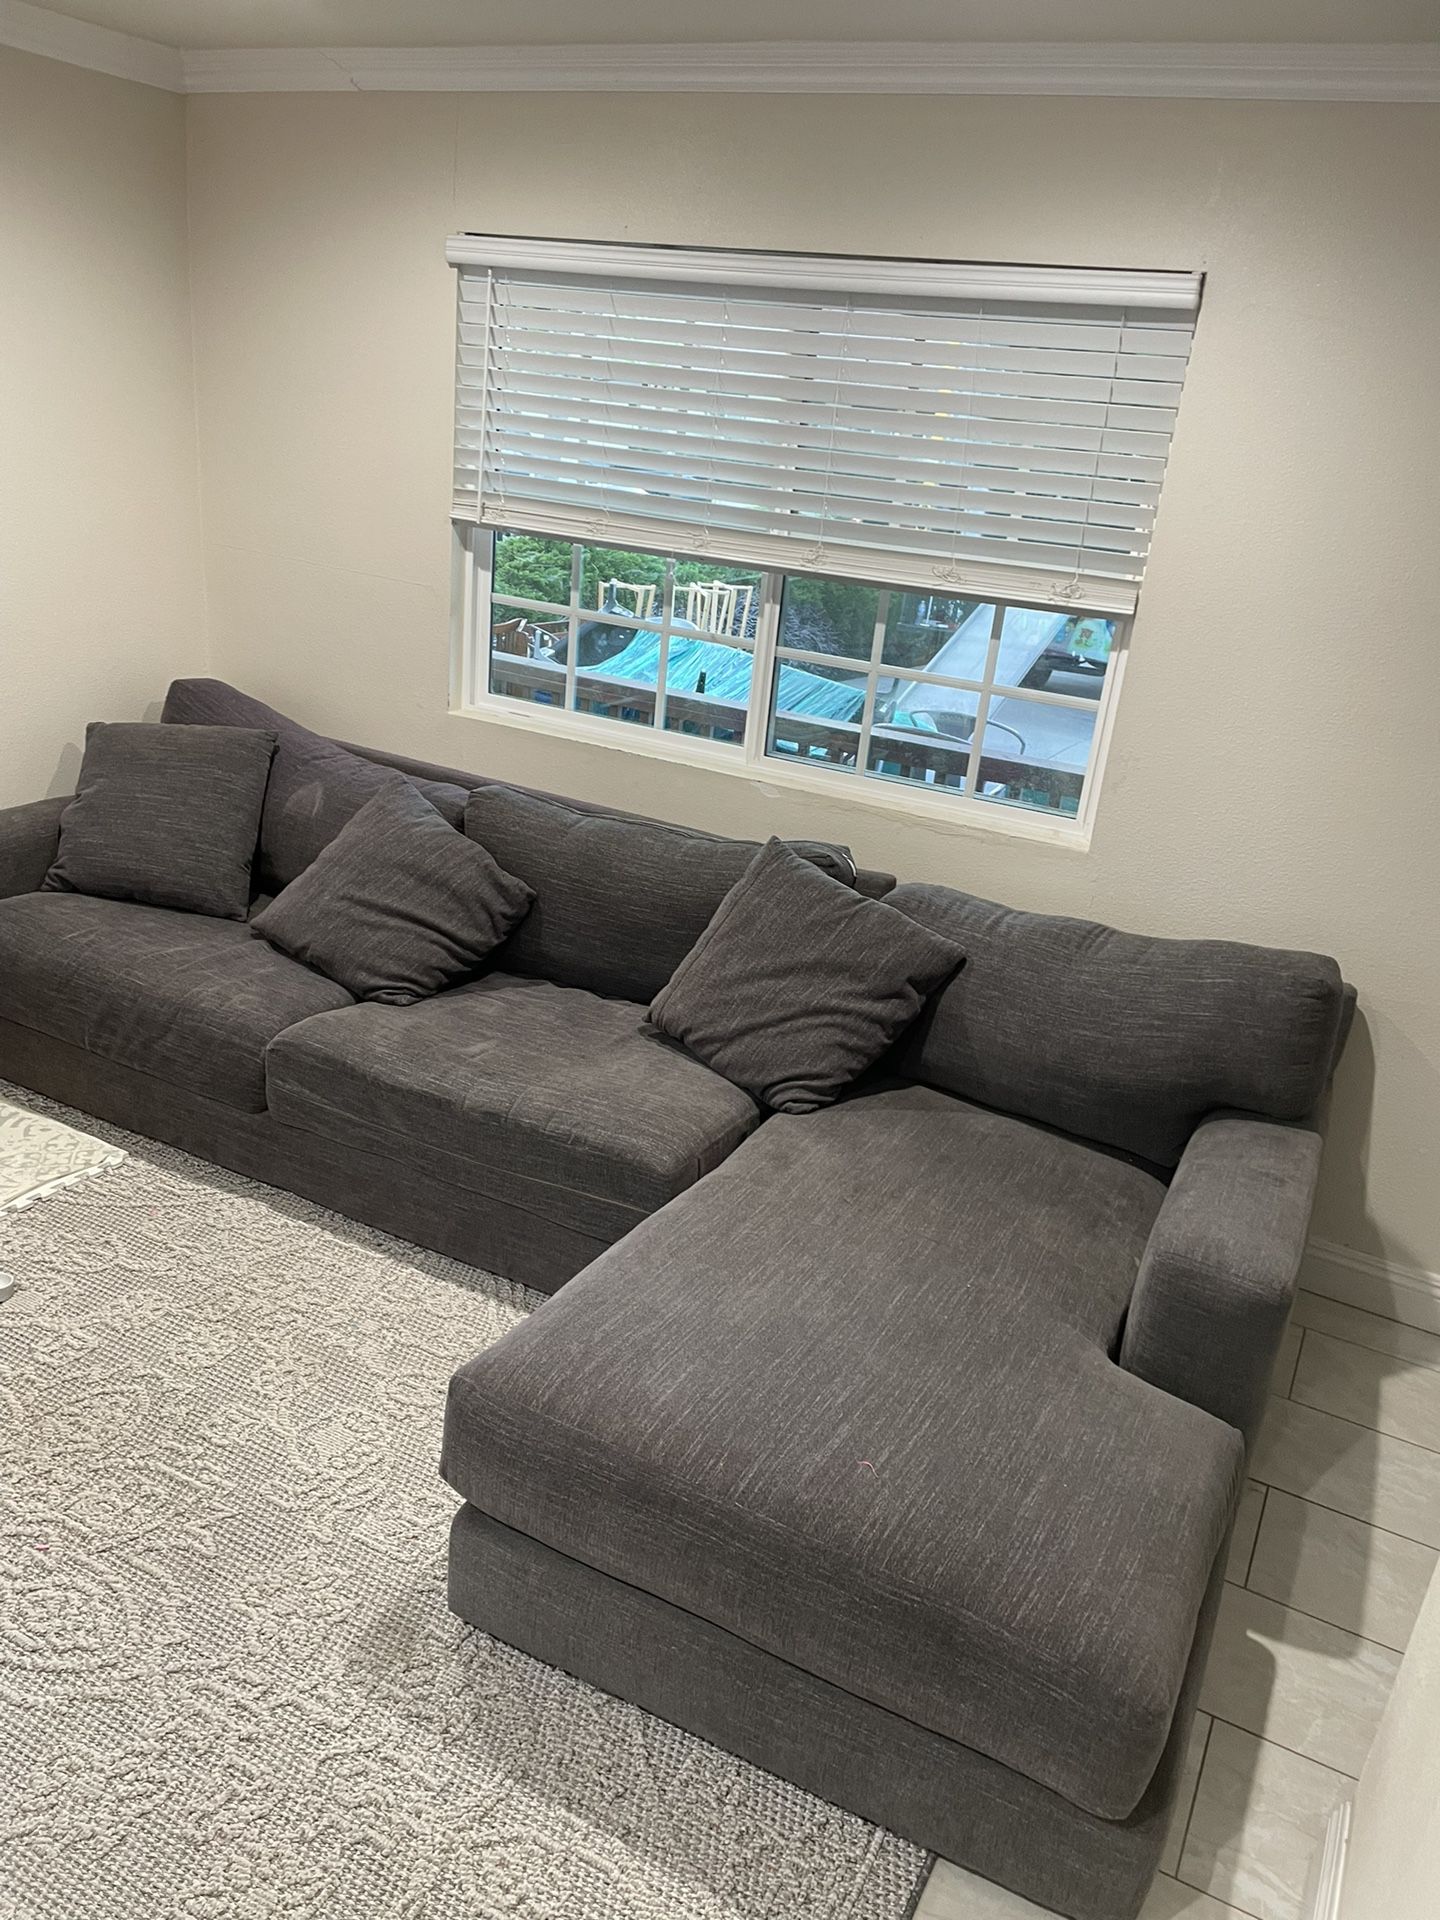 Dark Grey Couch Good Condition $100